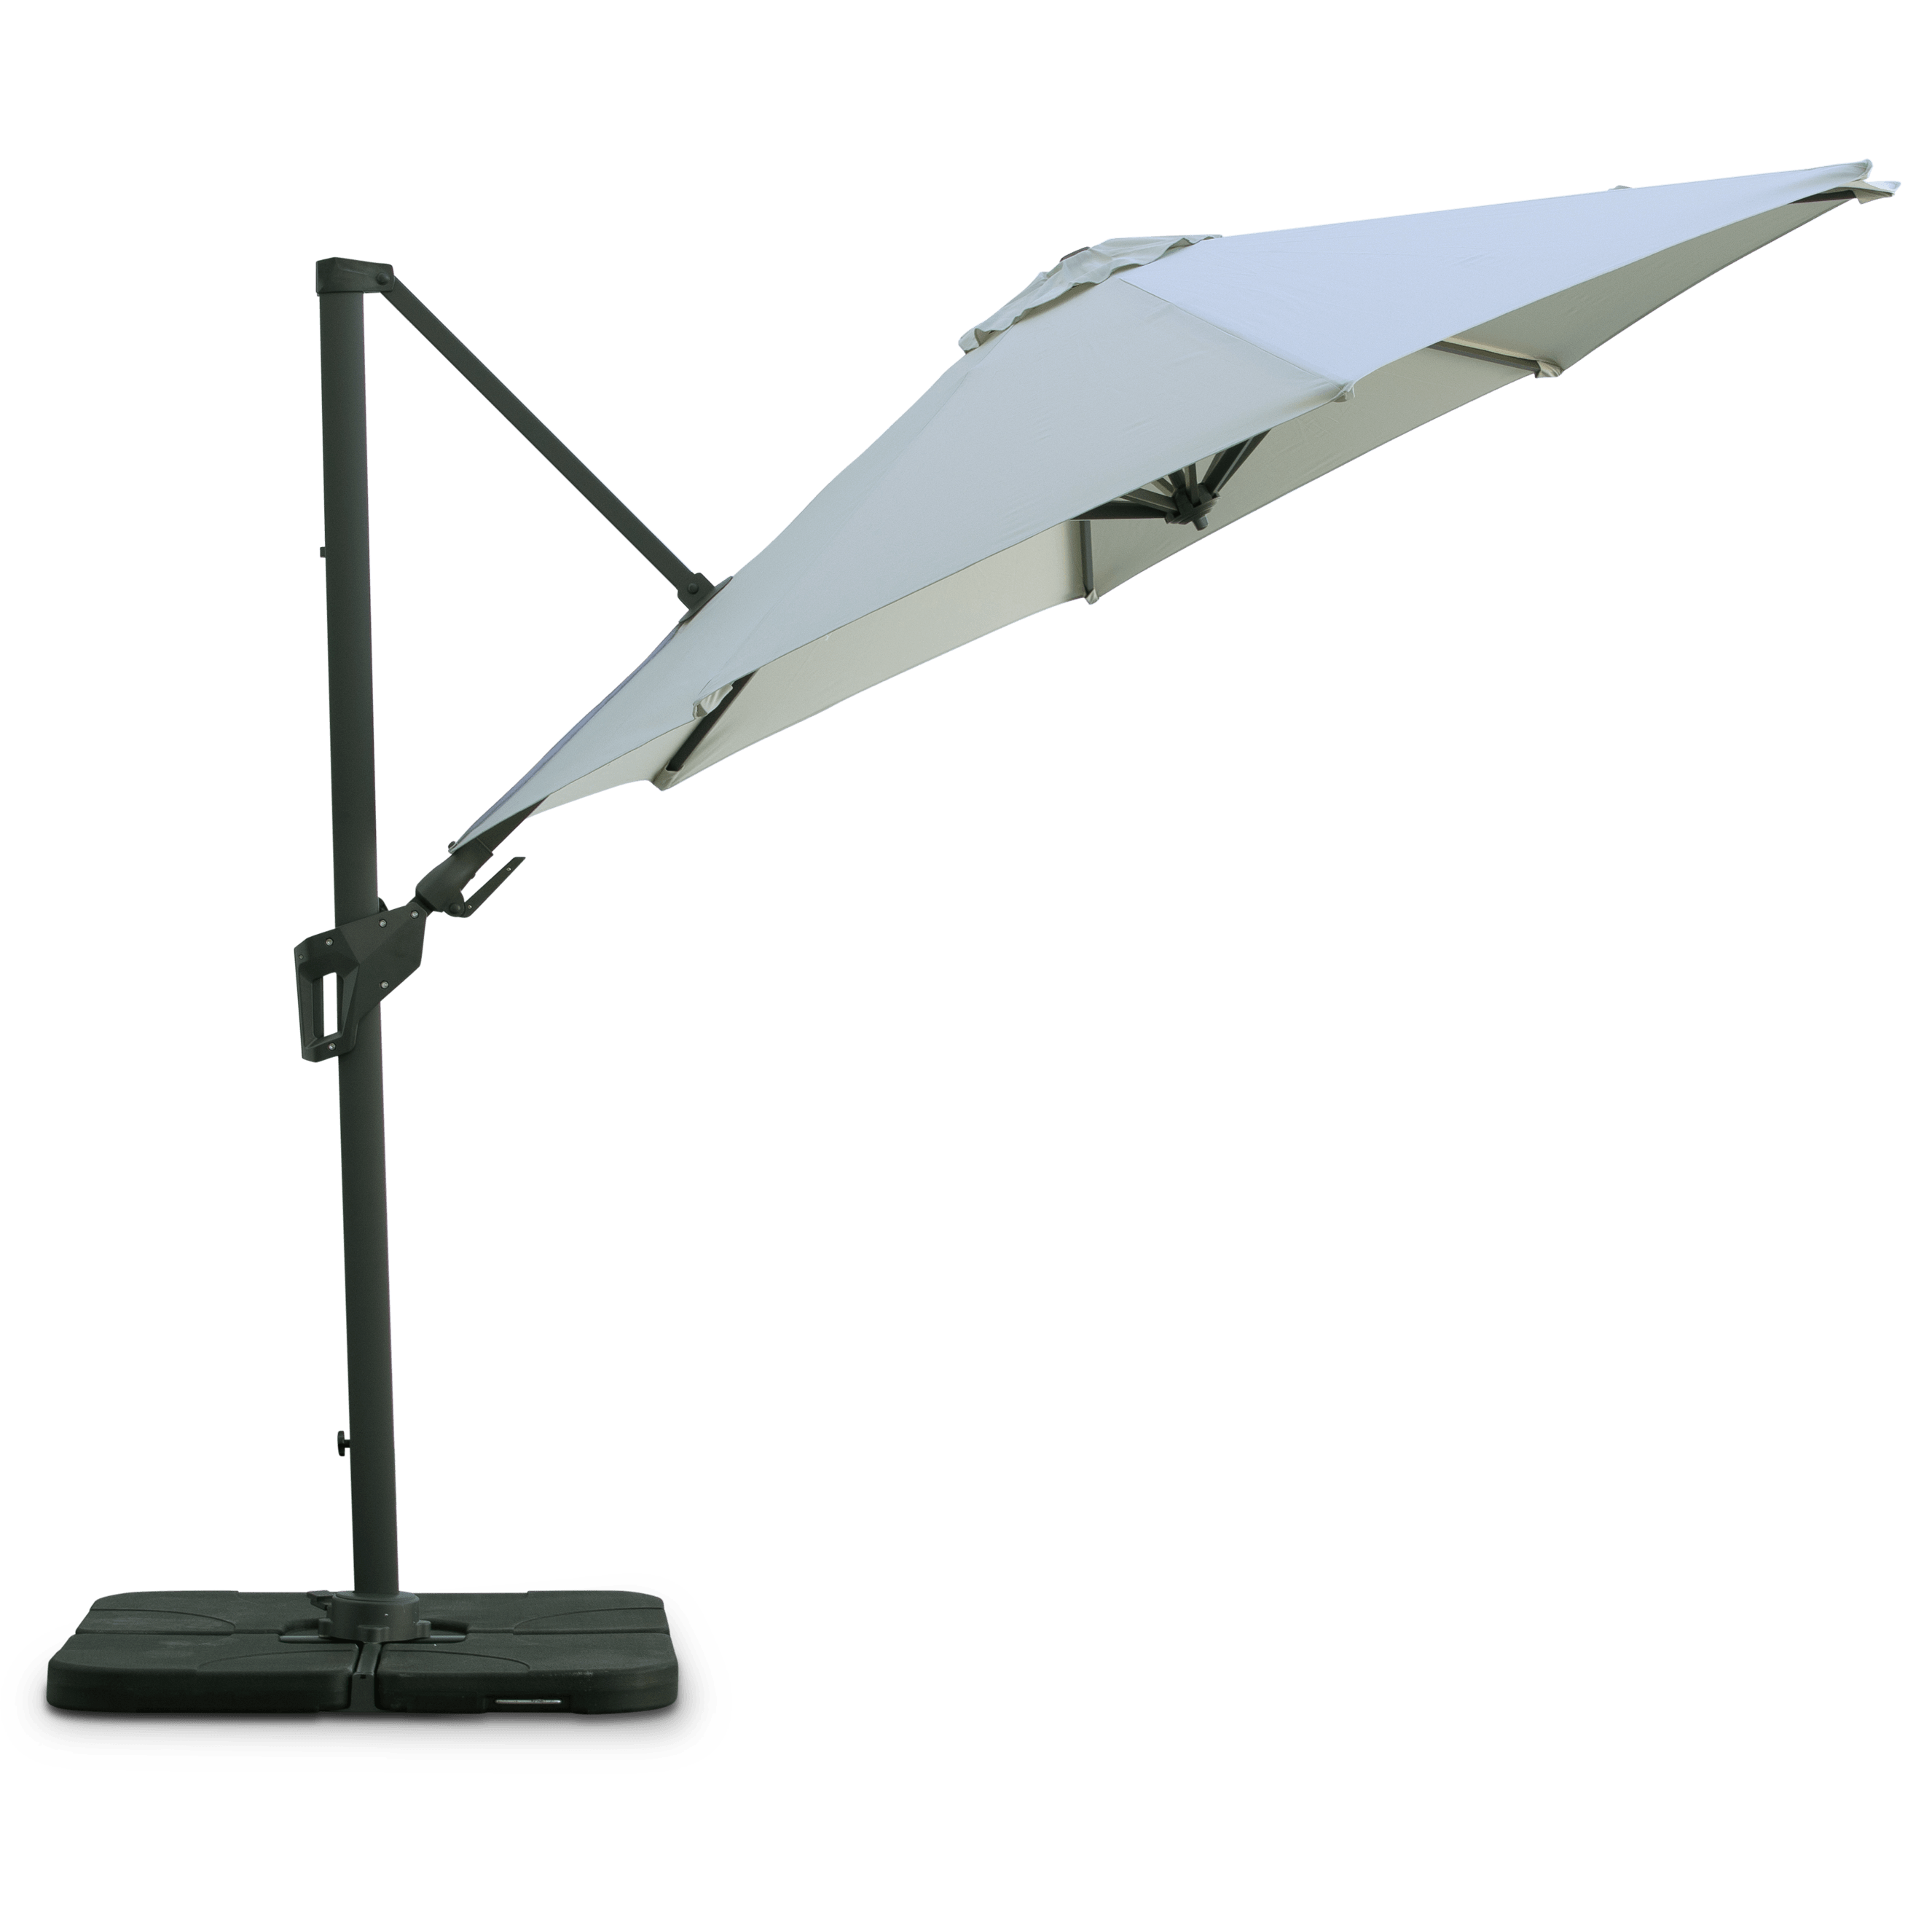 Resort 3m Octagonal Premium Outdoor Umbrella in Linen Olefin Fabric and Aluminium Frame - The Furniture Shack